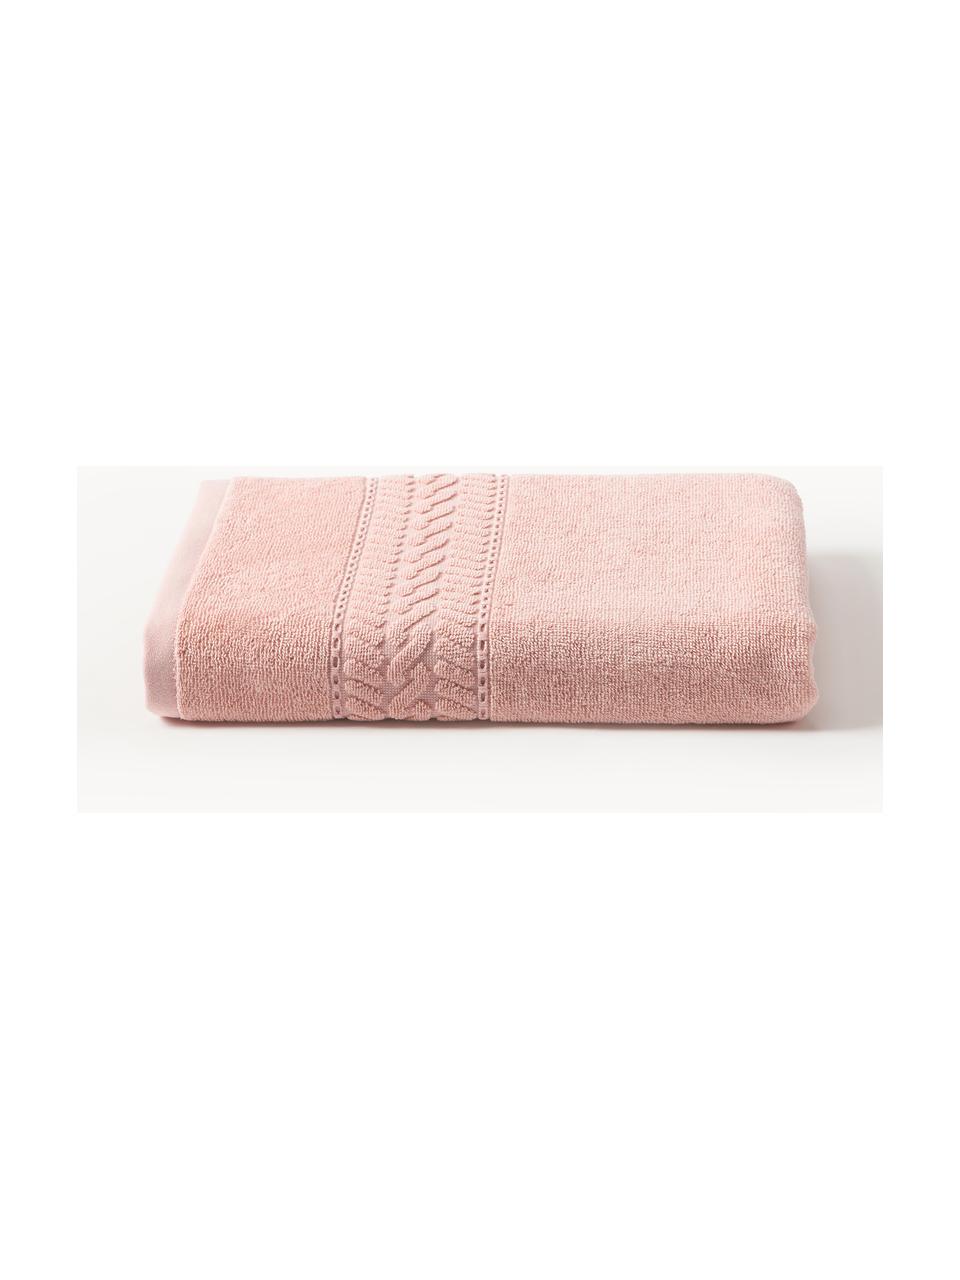 Handtuch Cordelia in verschiedenen Grössen, 100 % Baumwolle, Peach, Handtuch, B 50 x L 100 cm, 2 Stück